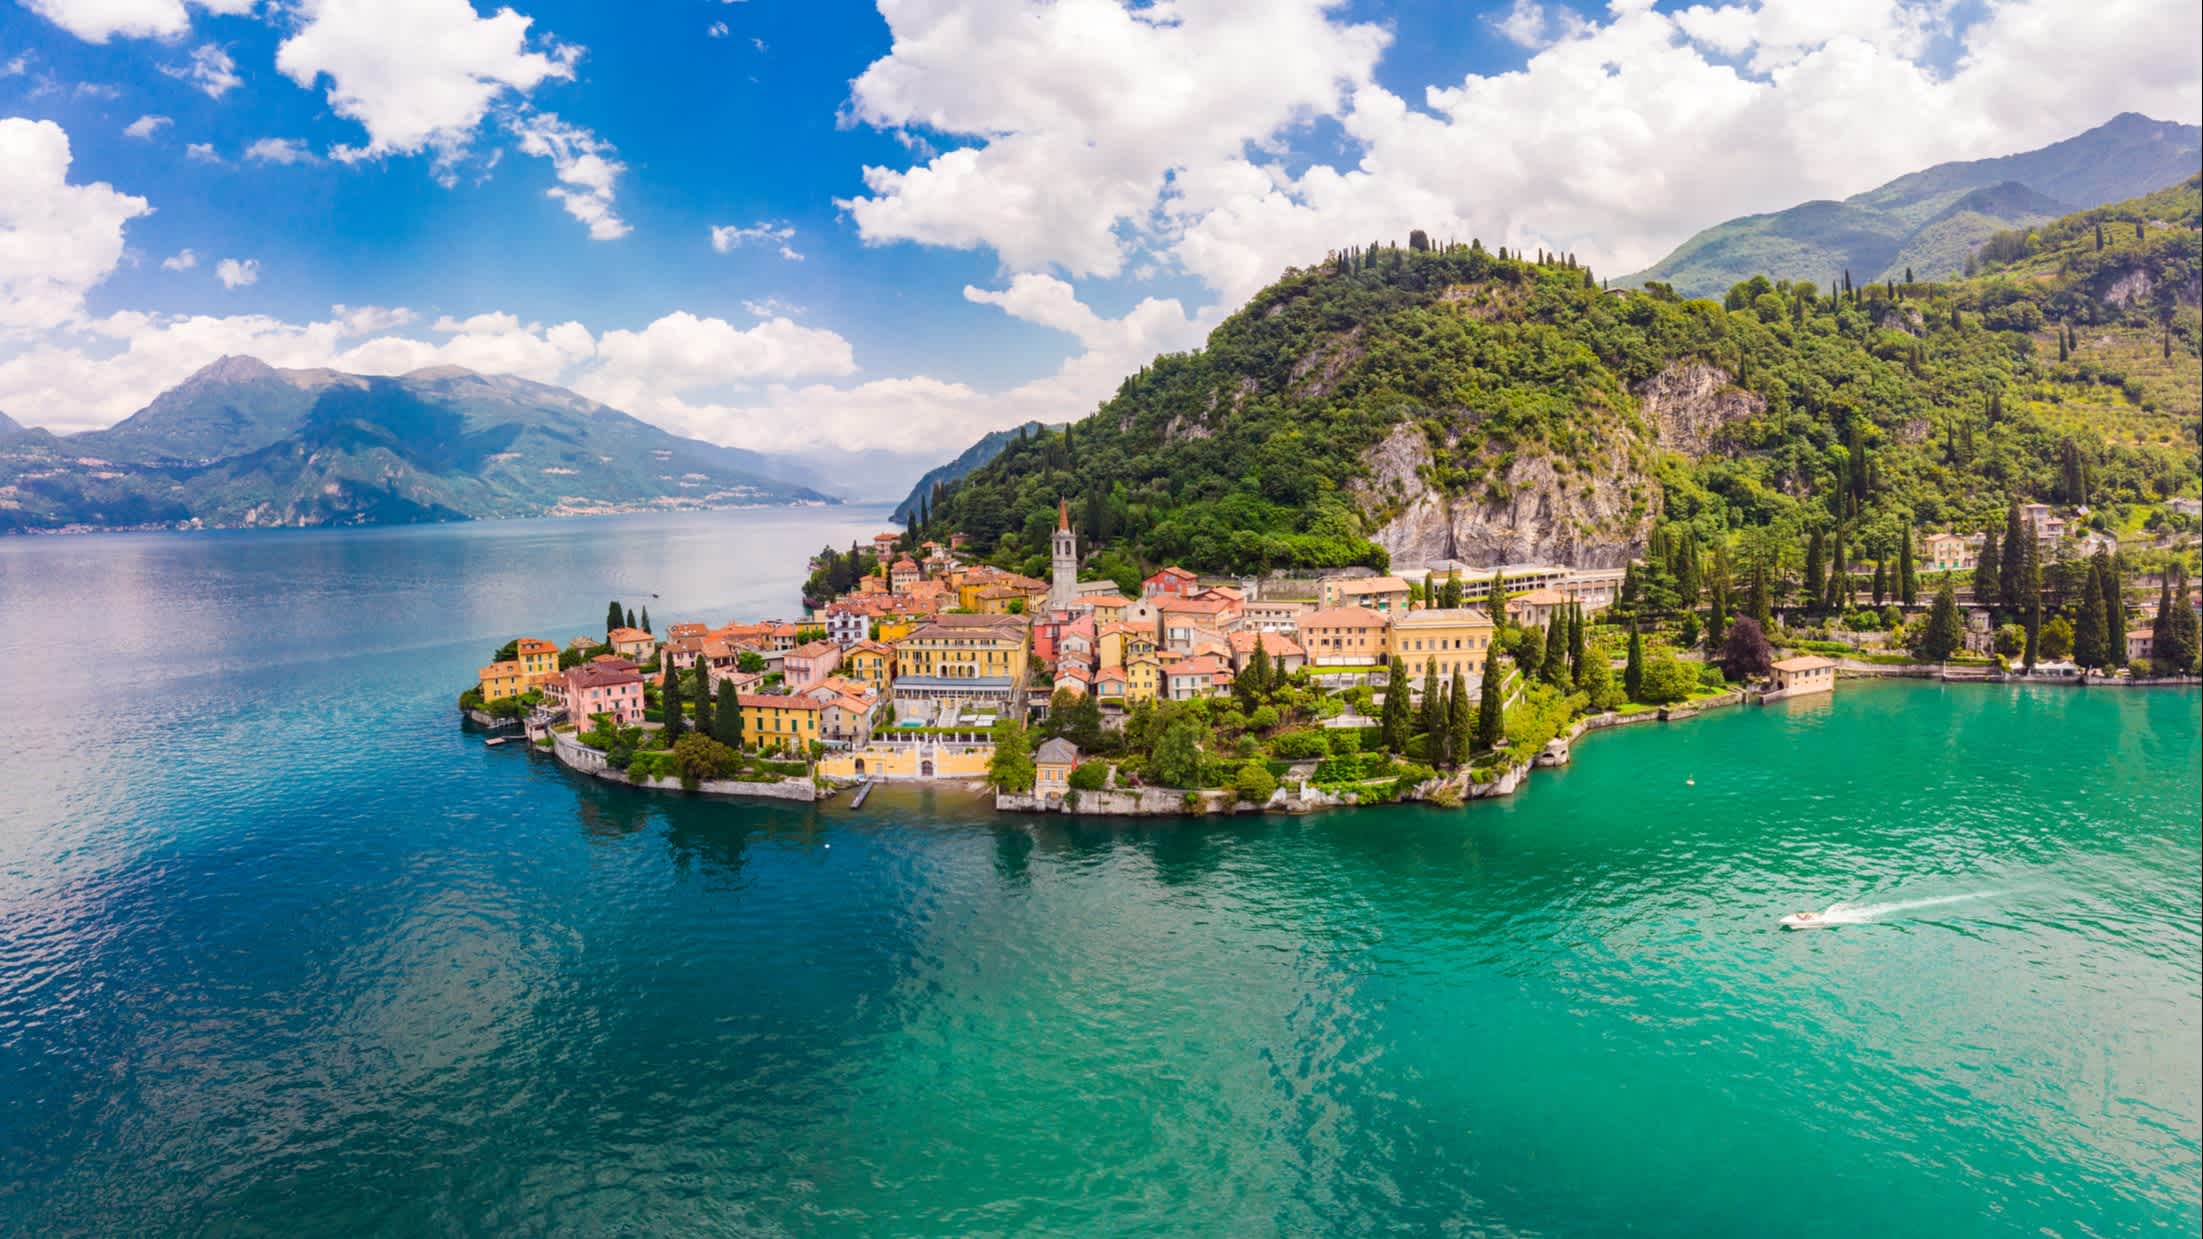 Vue aérienne de Varenna sur les rives du lac de Côme, en Lombardie, en Italie.
